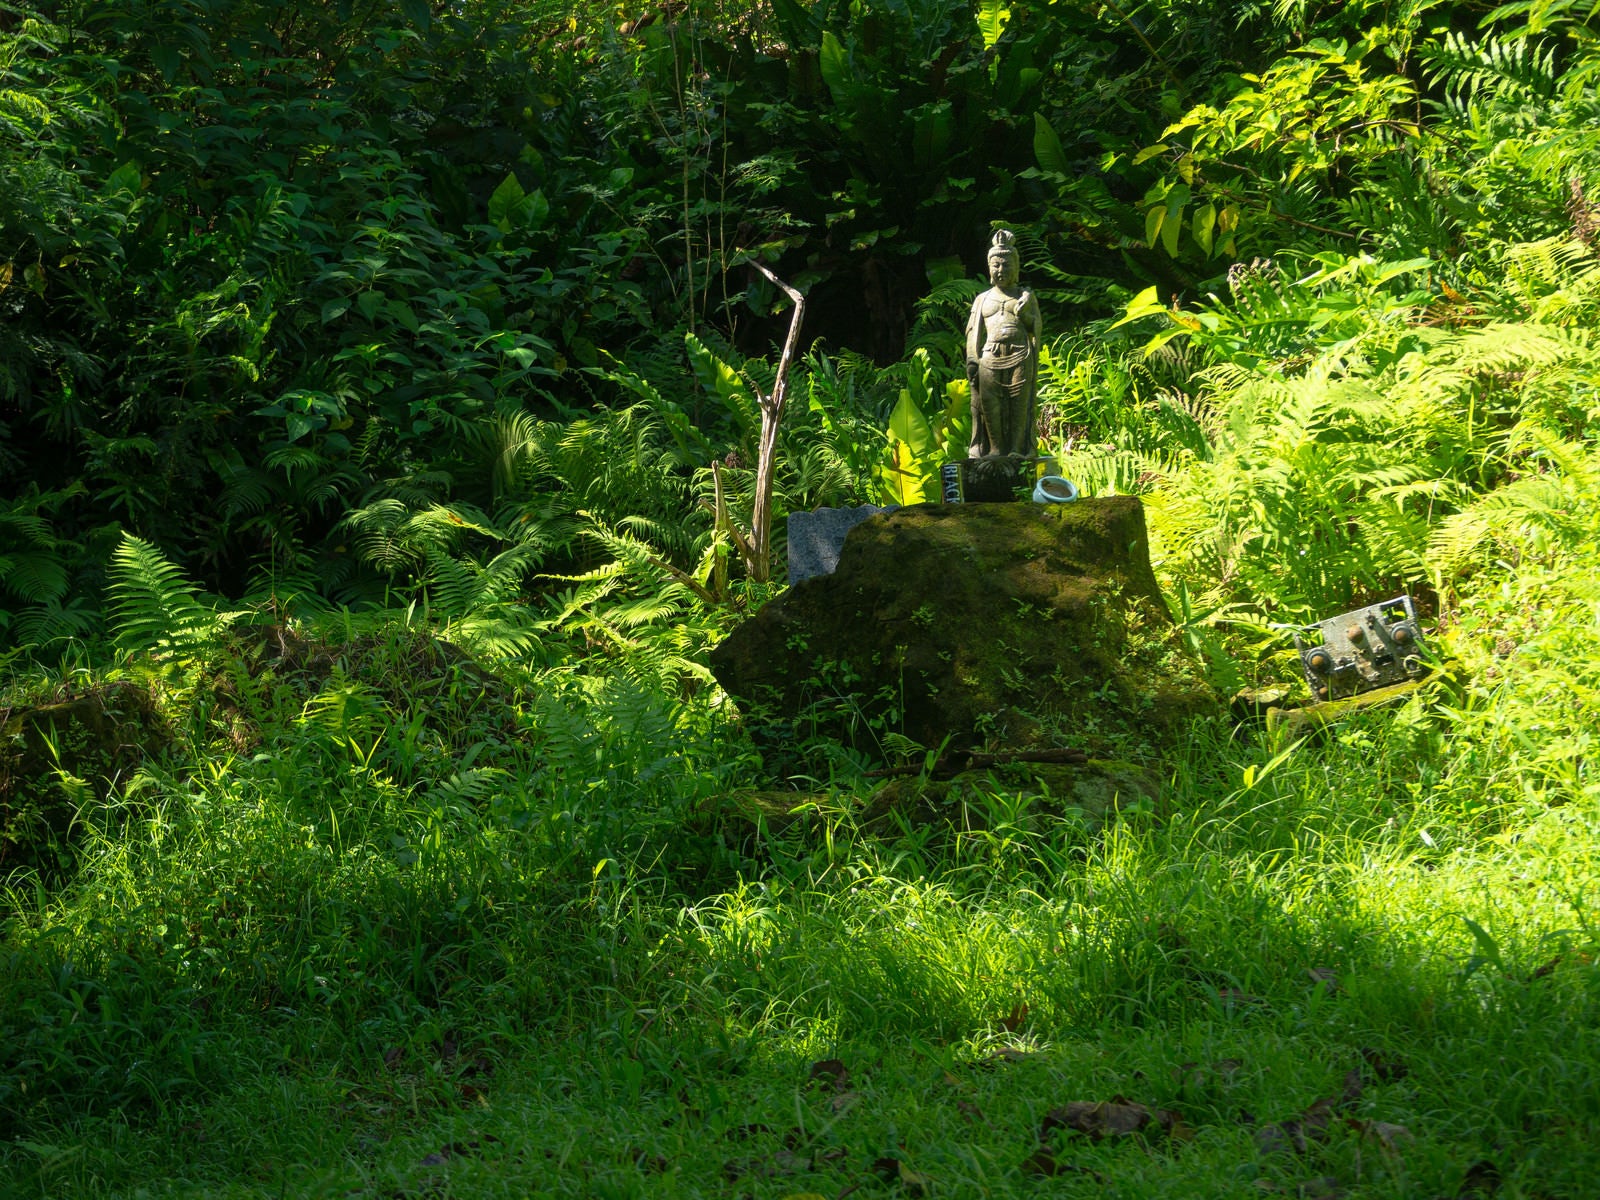 「兵団司令部壕の菩薩像と旧軍装備品の残骸」の写真